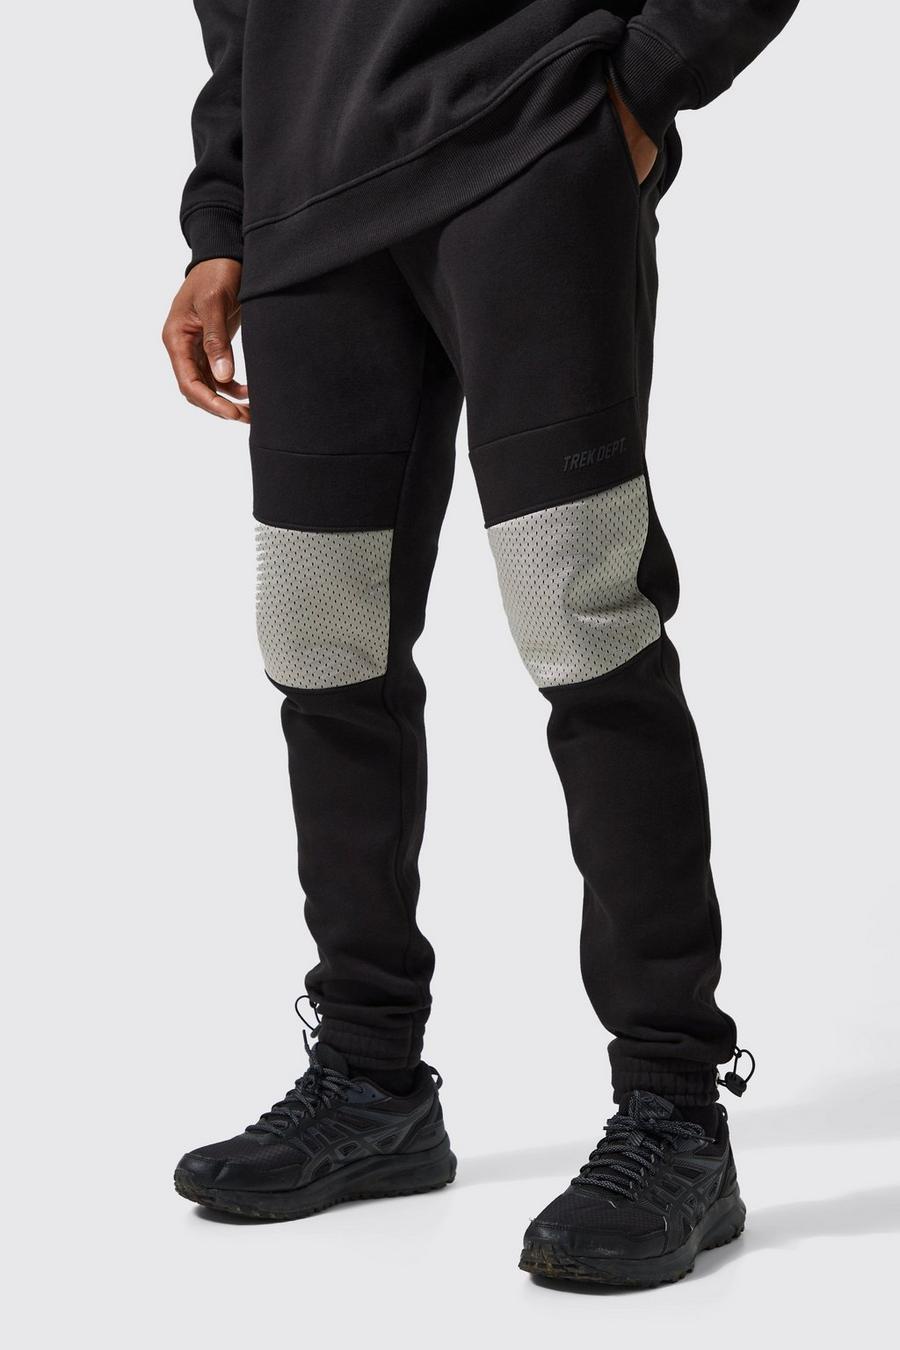 Pantaloni tuta Active Skinny Fit con dettagli in rete e polsini alle caviglie, Black